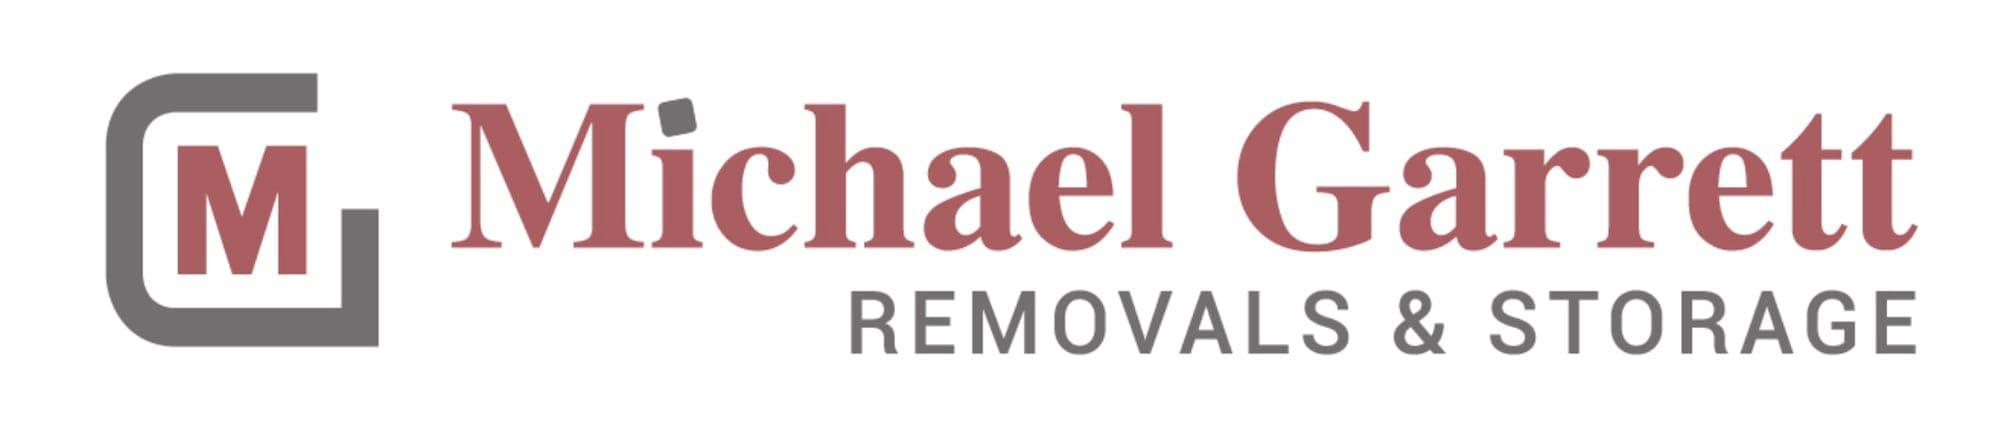 Michael Garrett Removals & Storage Paignton 01803 528582